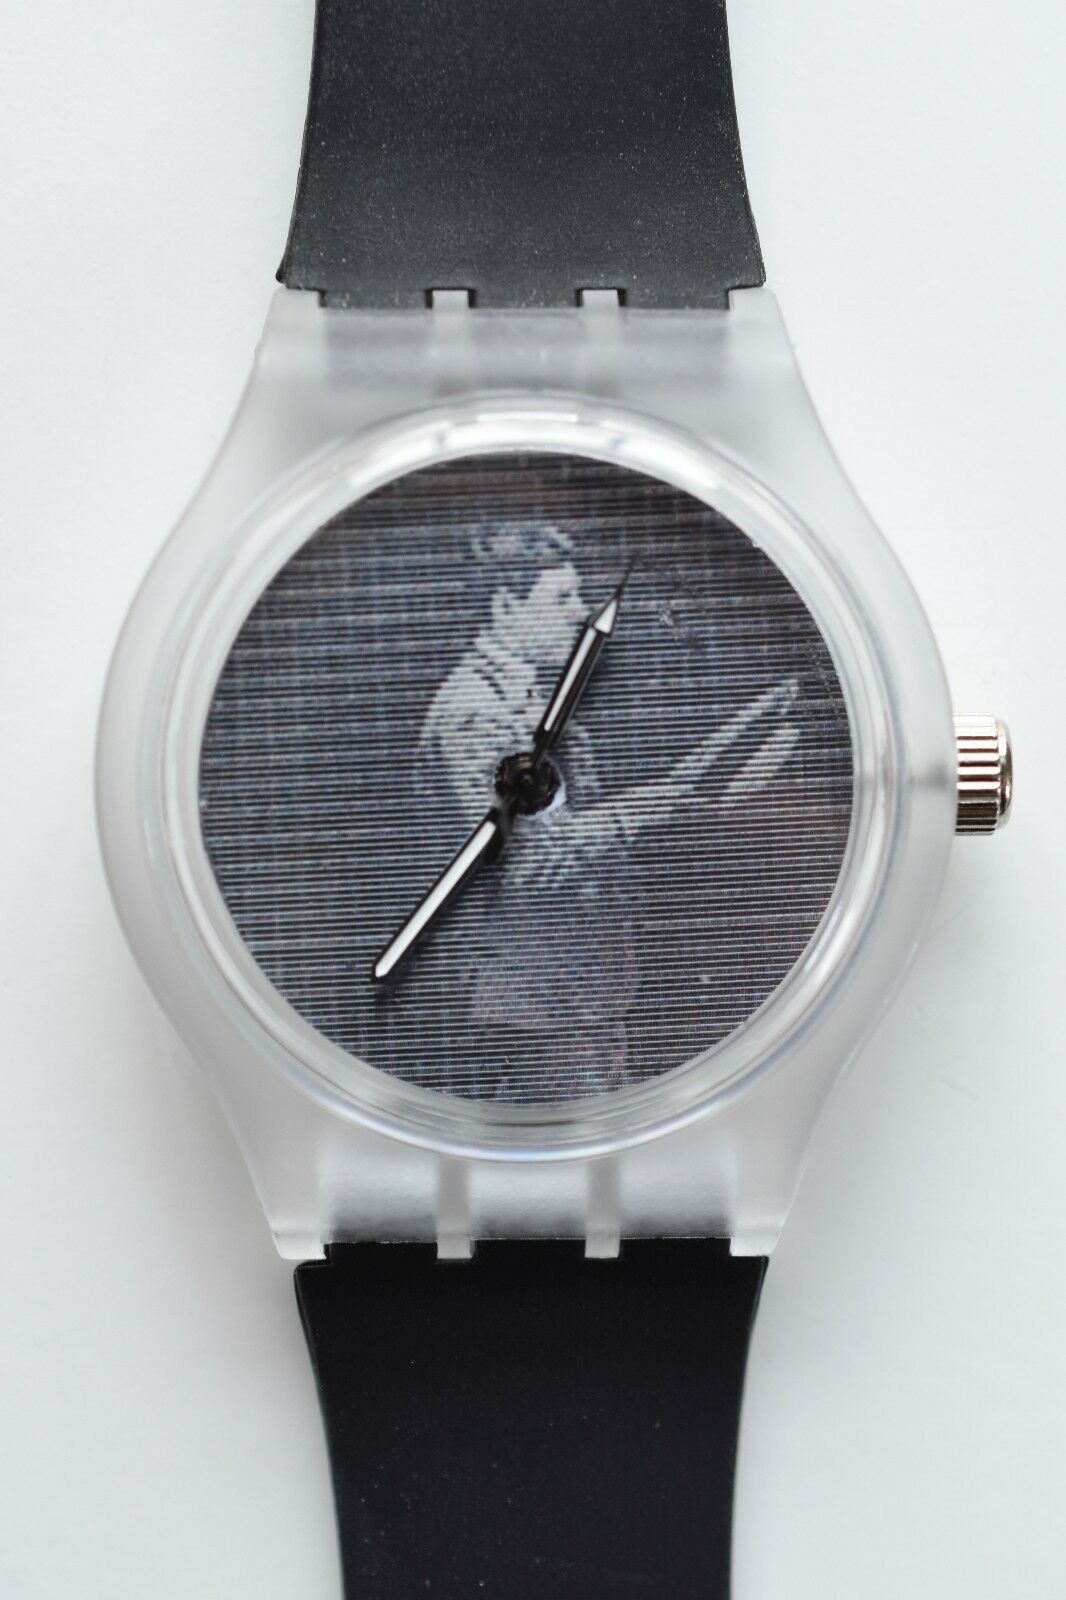 Hipster Lenticular Muybridge Watch - Retro 80s Designer Watch